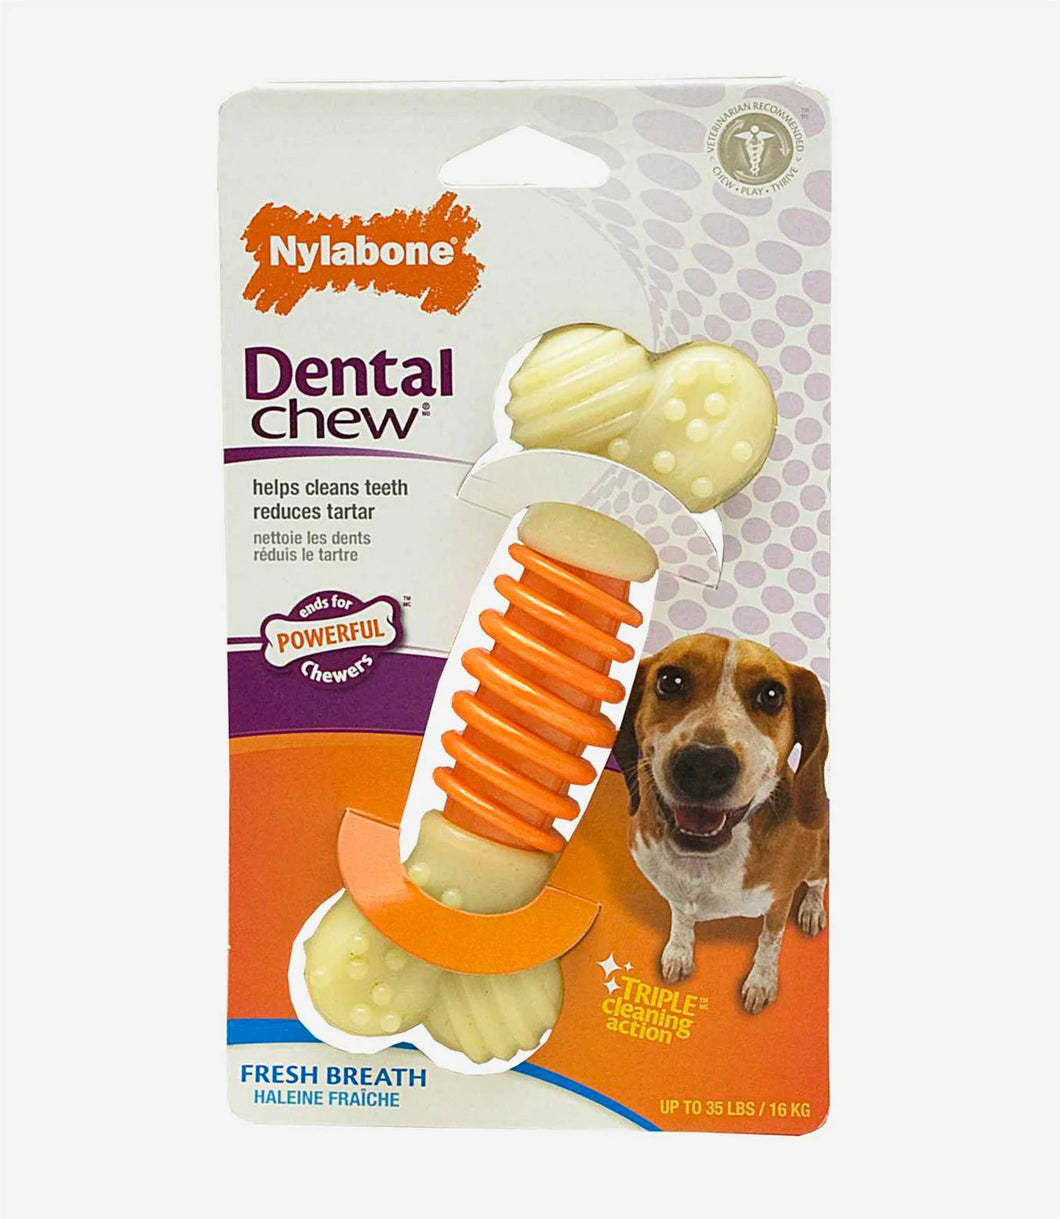 Nylabone Pro Action Dental Chew Dog Toy